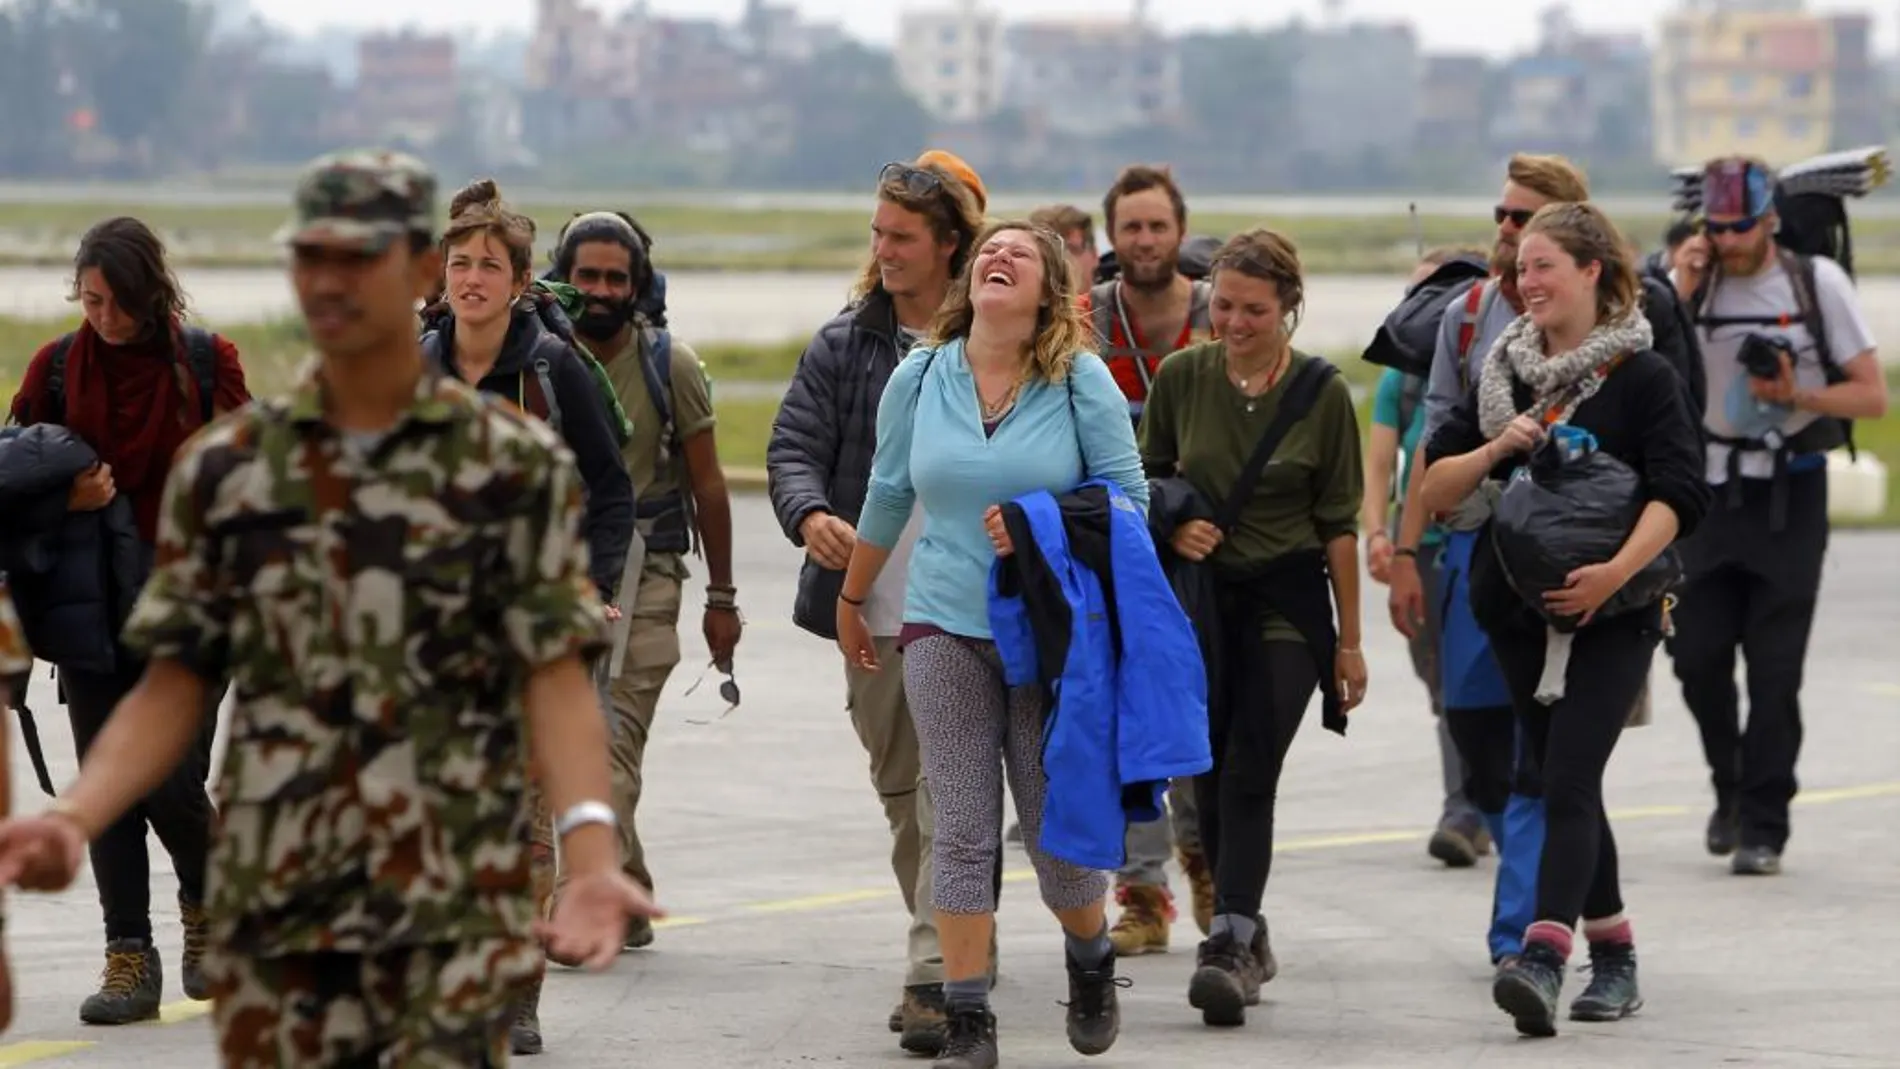 Un grupo de montañeros rescatado de Langtang muestra su alegría al llegar al aeropuerto de Katmandú.